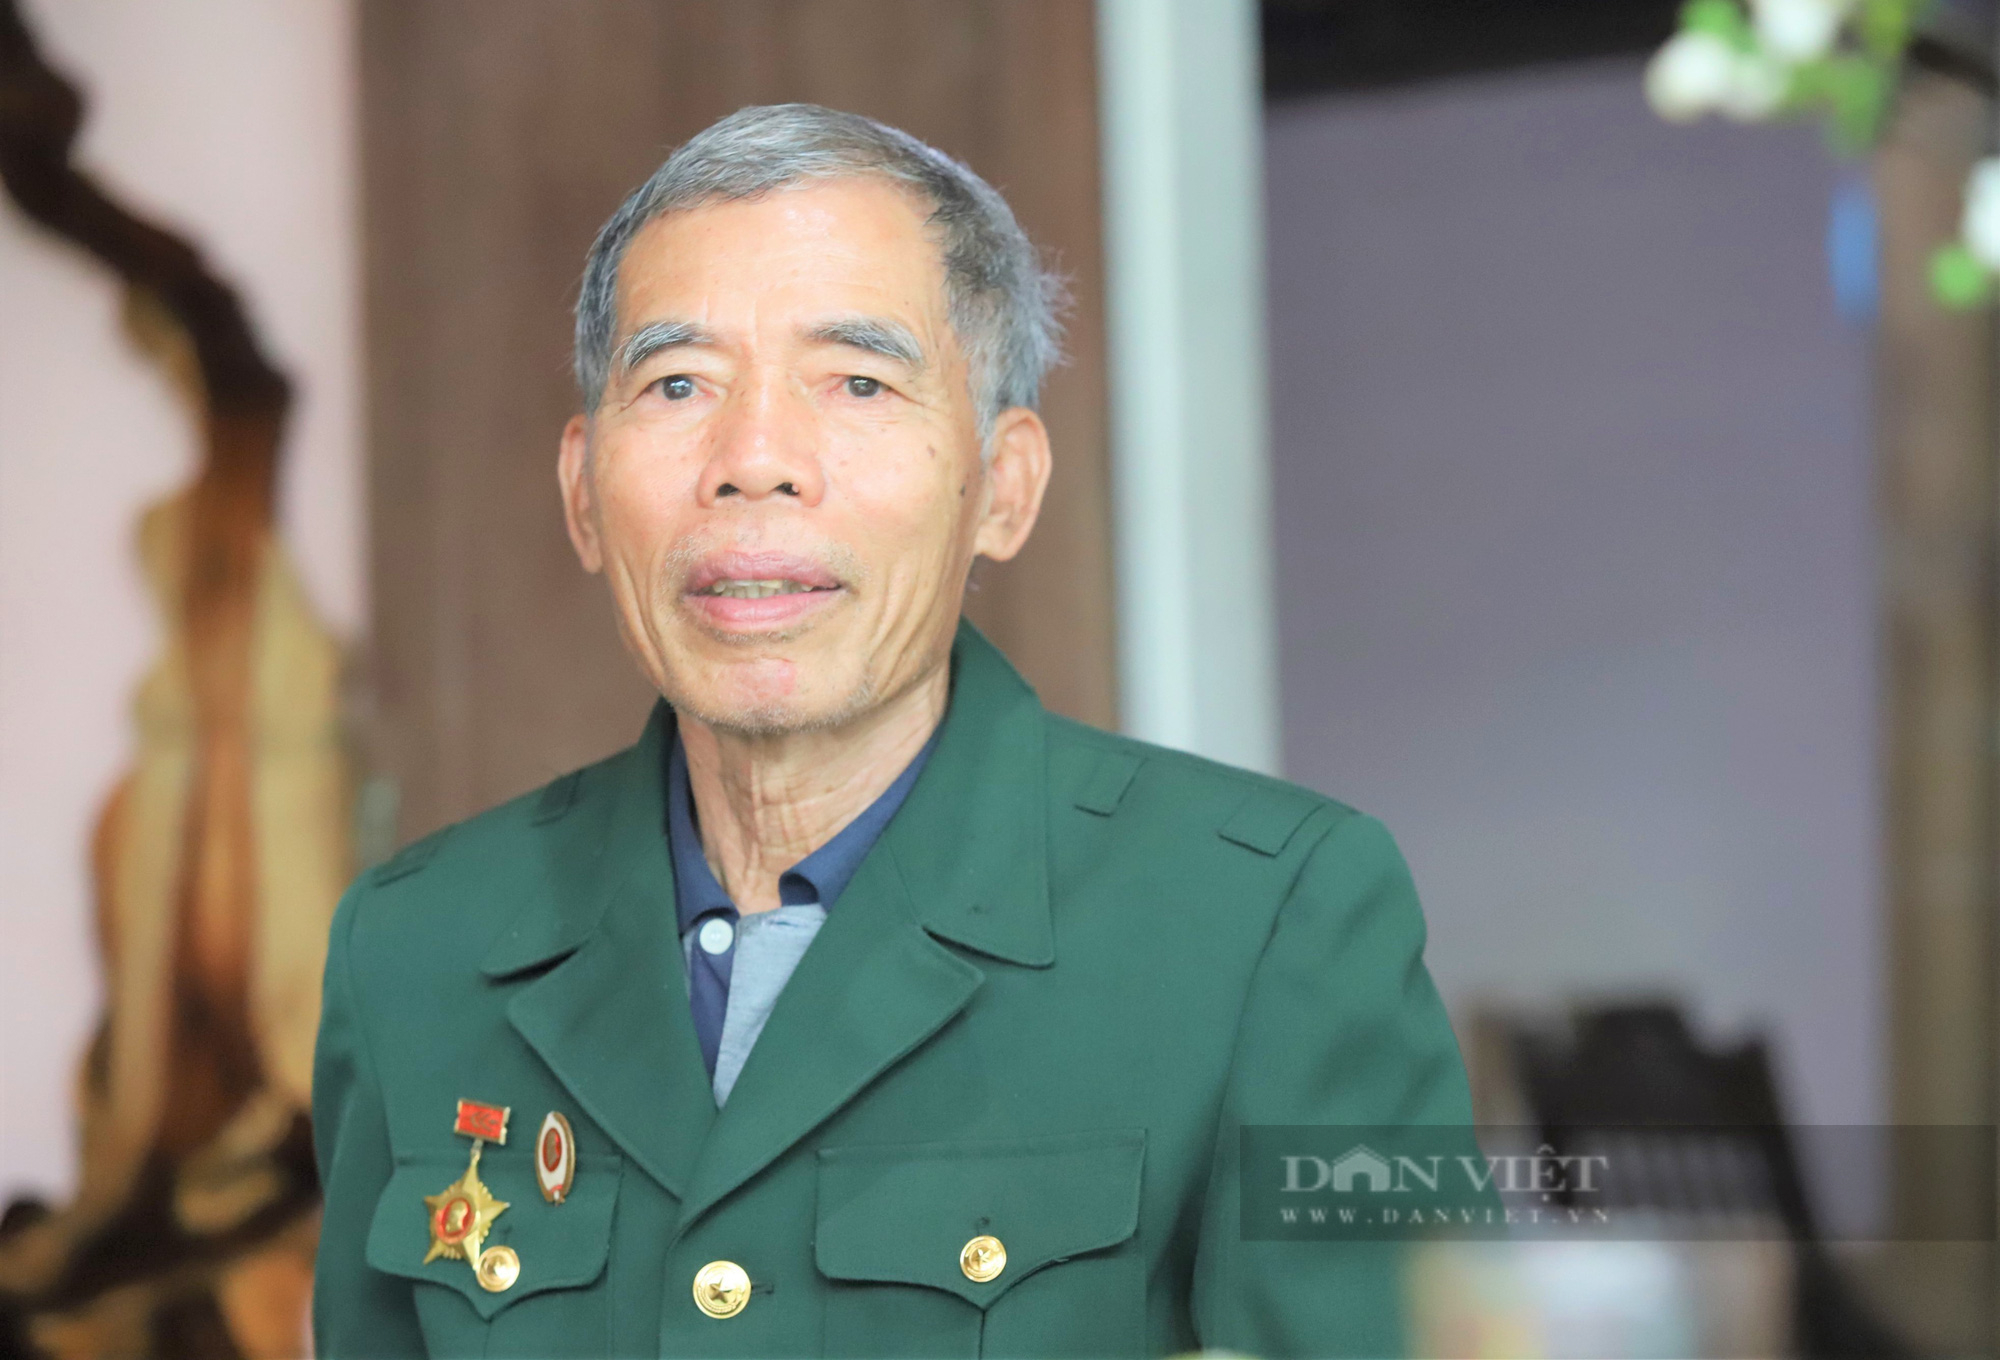 Xuân Nhâm Dần xúc động nghe cựu binh Hà Tĩnh kể lại khoảnh khắc gặp lại cha ớ chiến trường Quảng Trị khốc liệt  - Ảnh 2.